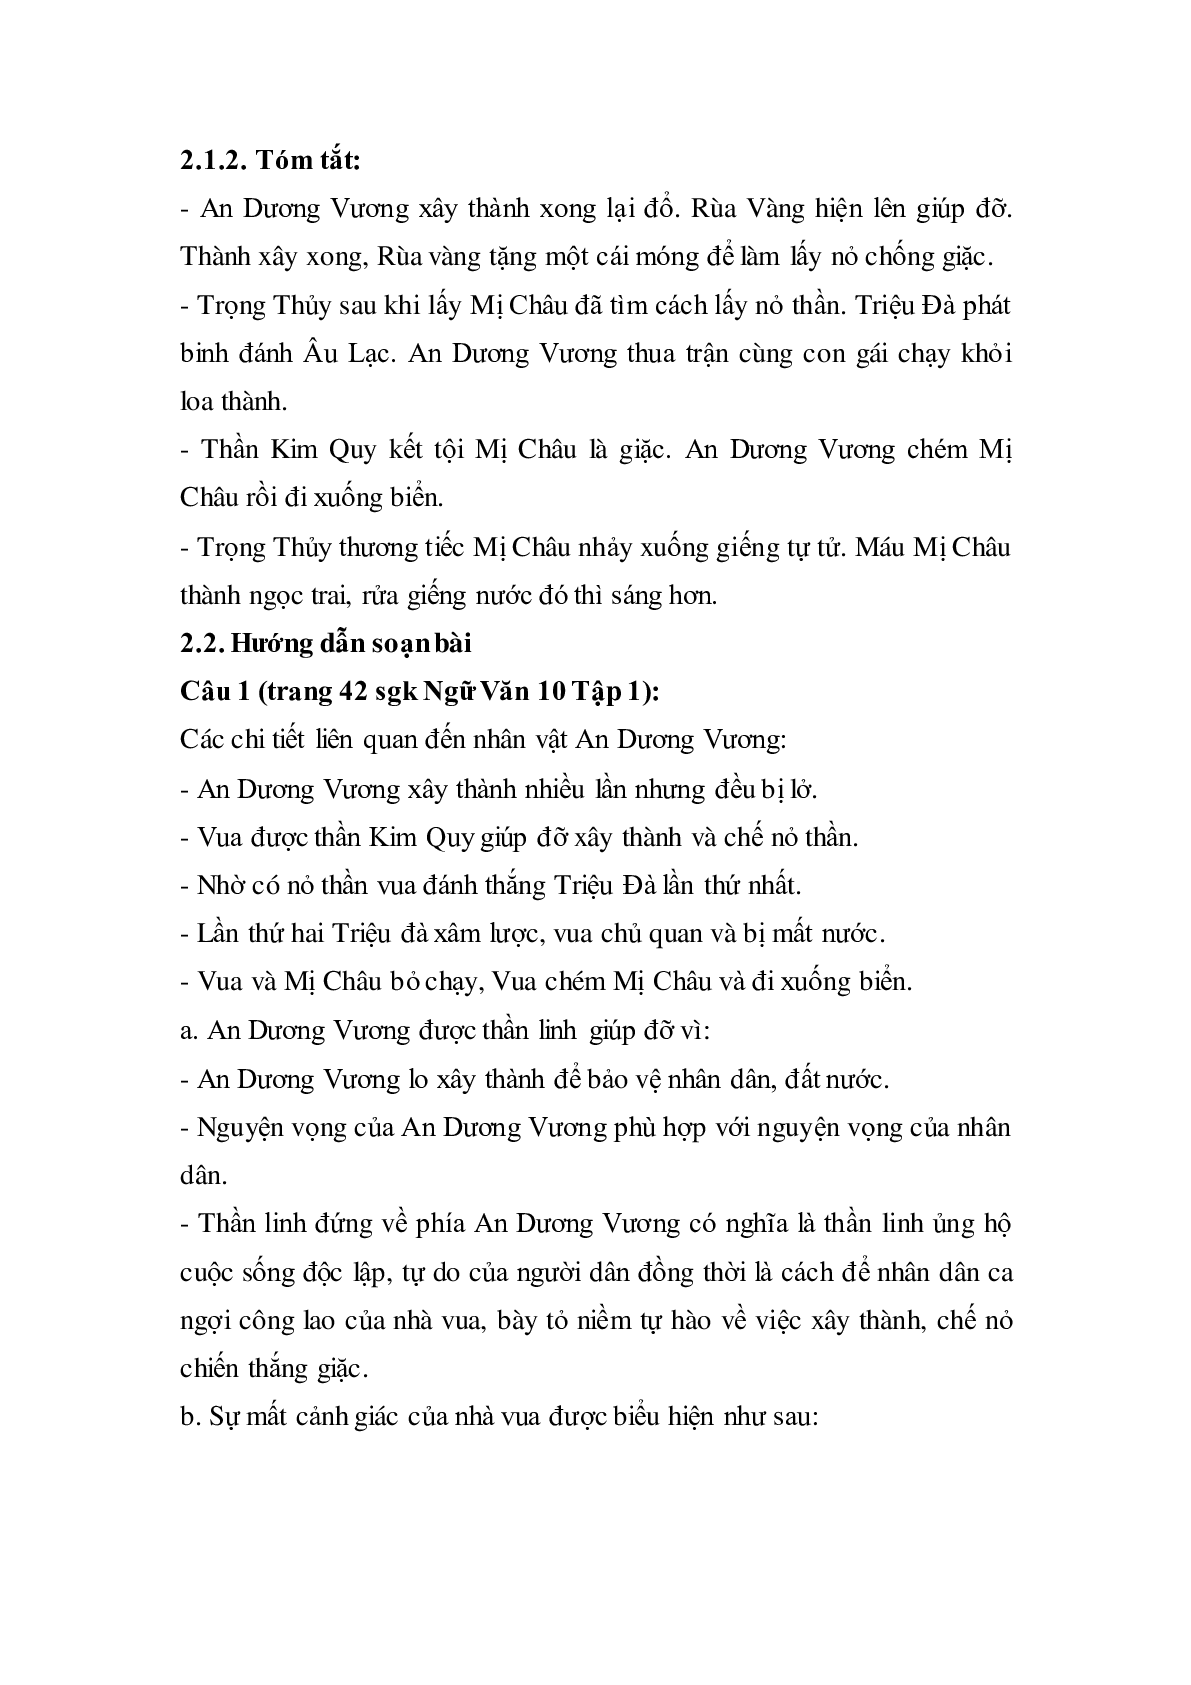 Soạn bài Truyện An Dương Vương và Mị Châu - Trọng Thủy - ngắn nhất Soạn văn 10 (trang 6)